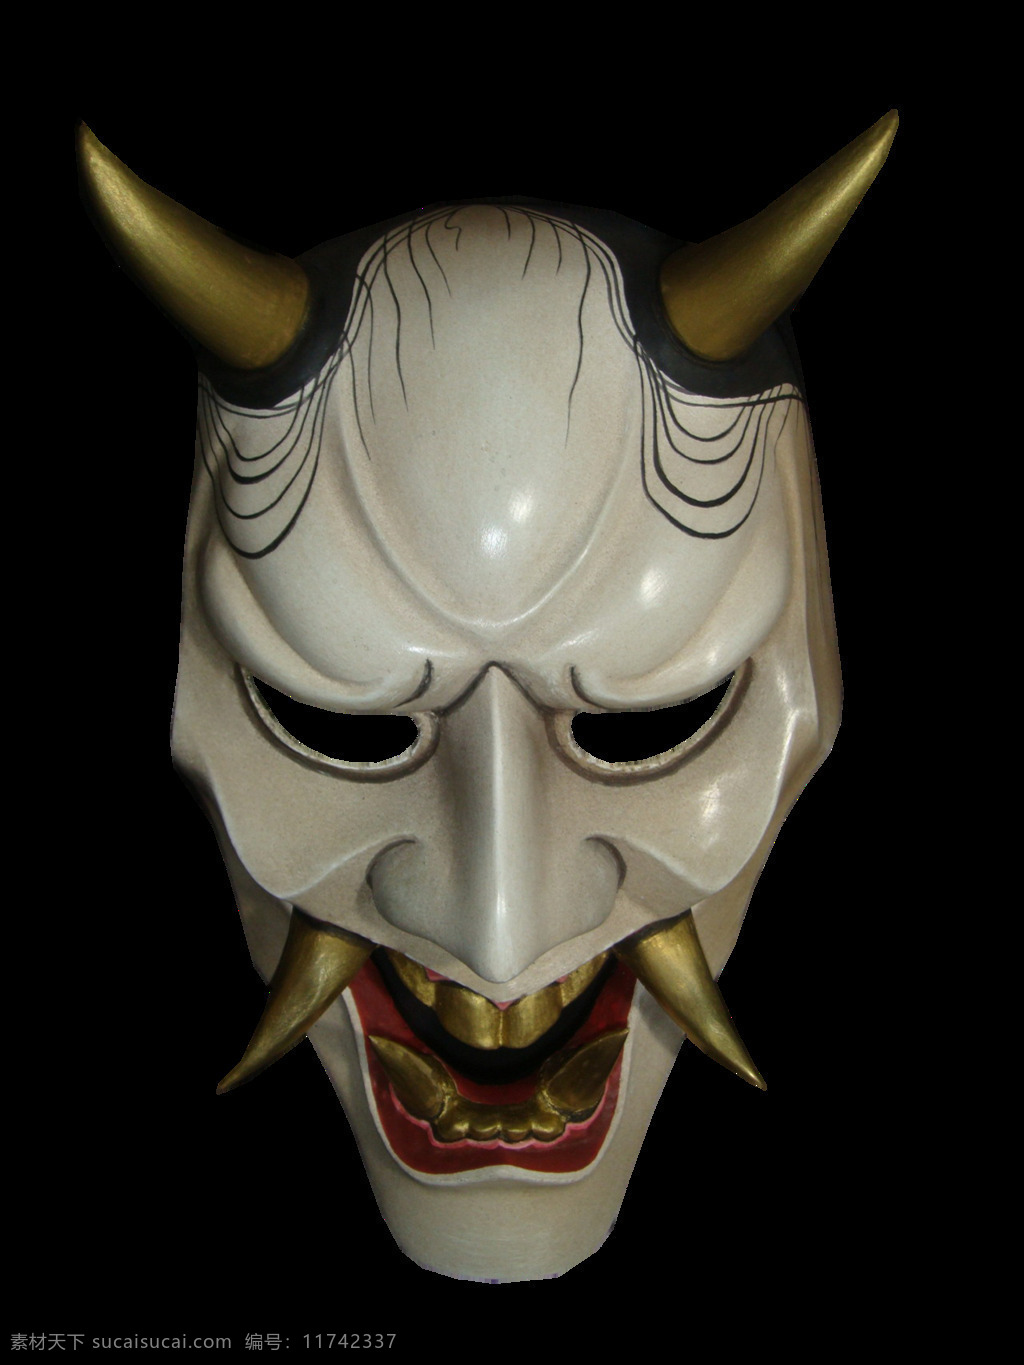 白色 带 角 恶魔 面具 免 抠 透明 带角恶魔面具 白色面具图 面具广告图片 创 意图 面具设计素材